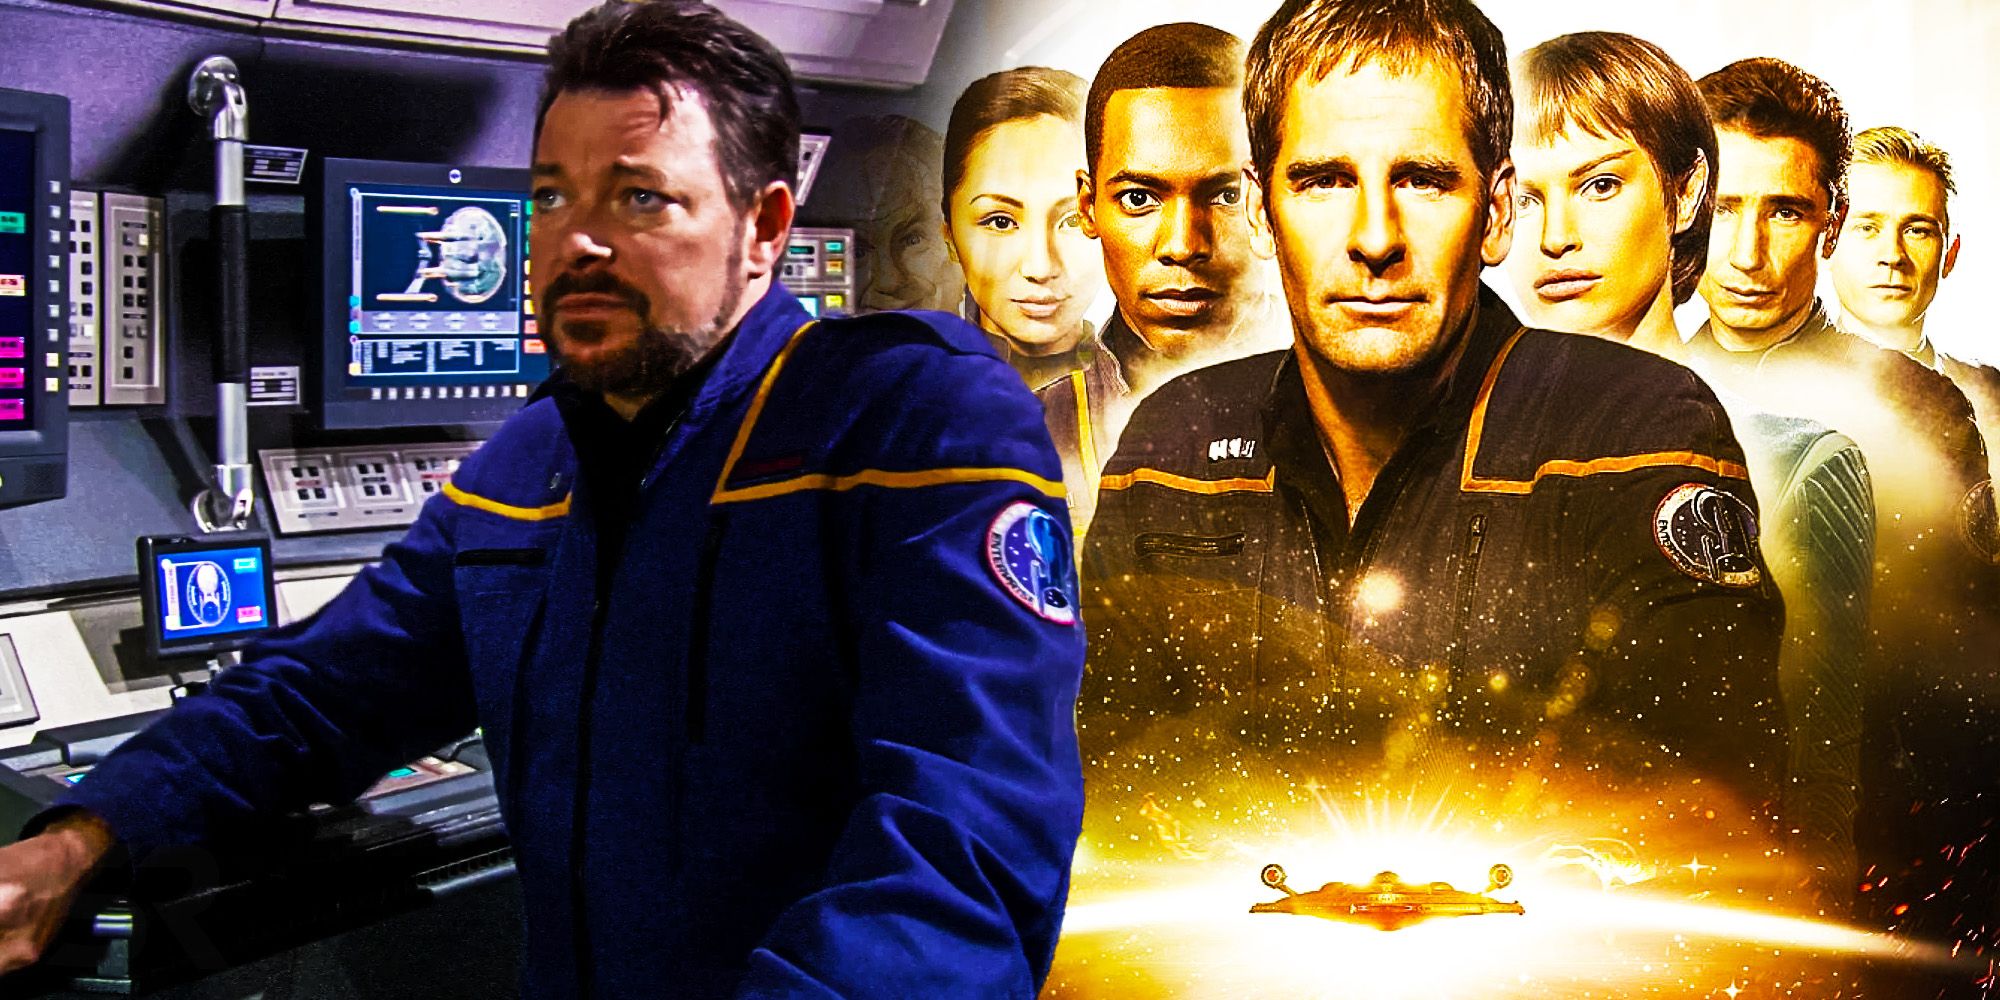 “Los fanáticos no querían vernos”: Jonathan Frakes habla sobre el odiado final de Star Trek Enterprise